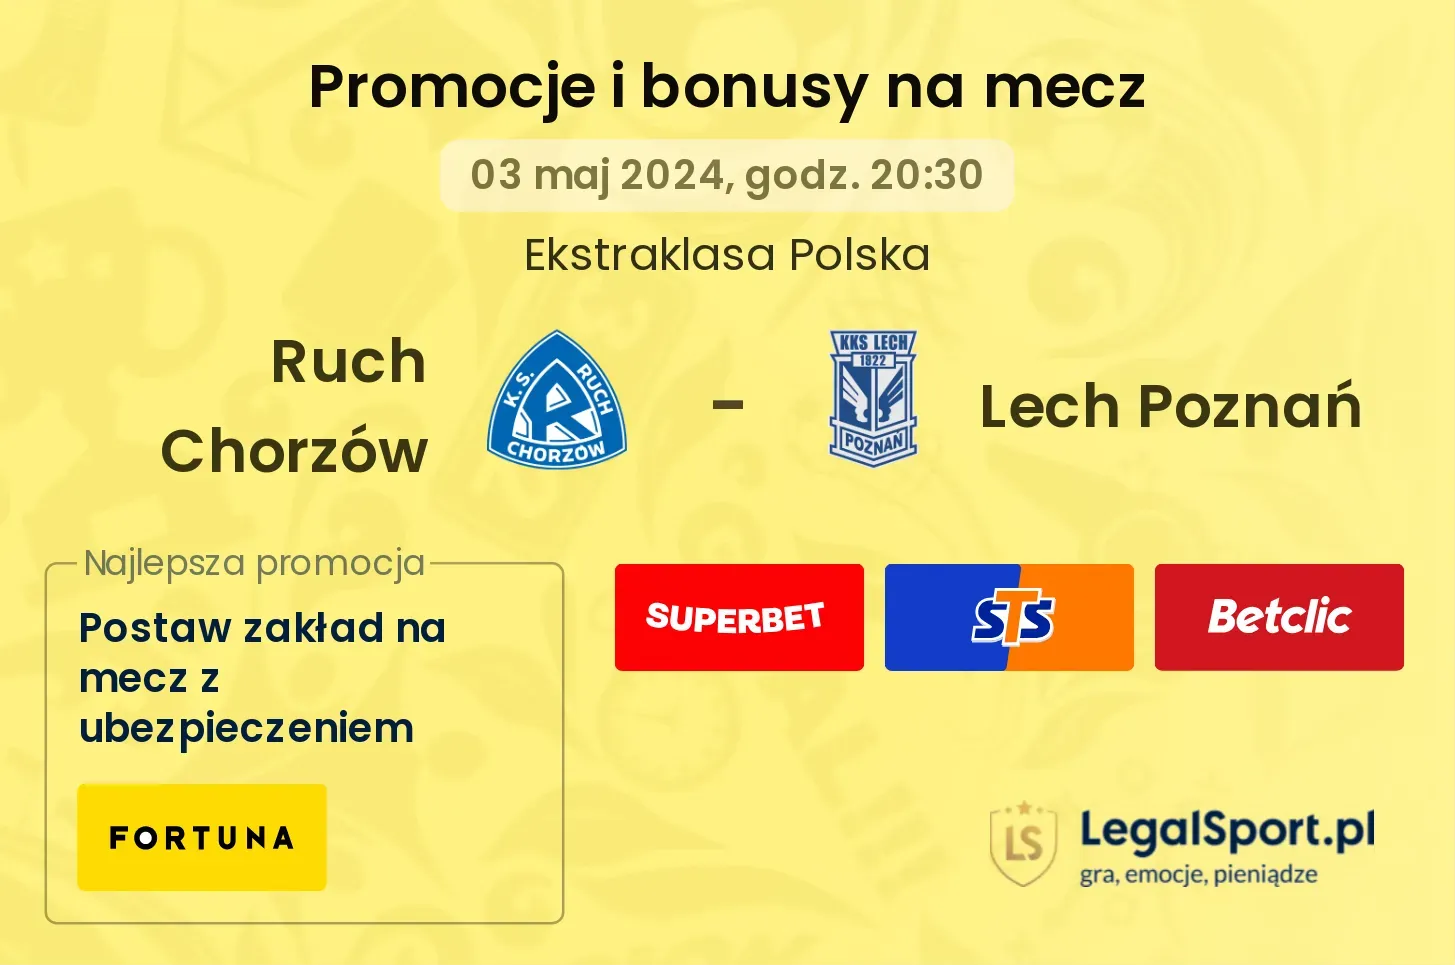 Ruch Chorzów - Lech Poznań bonusy i promocje (03.05, 20:30)